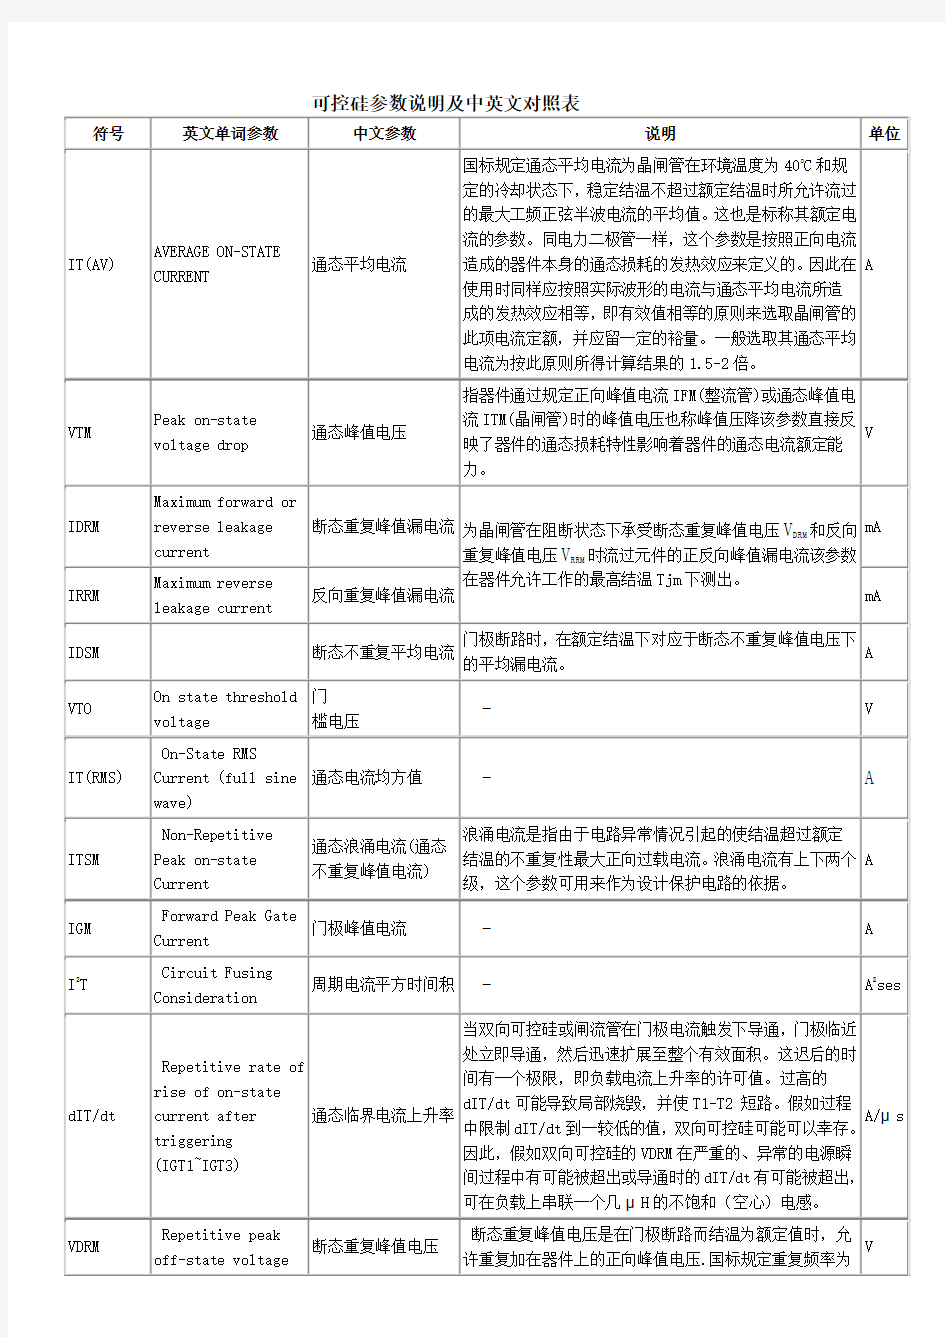 可控硅参数说明及中文英文对照表